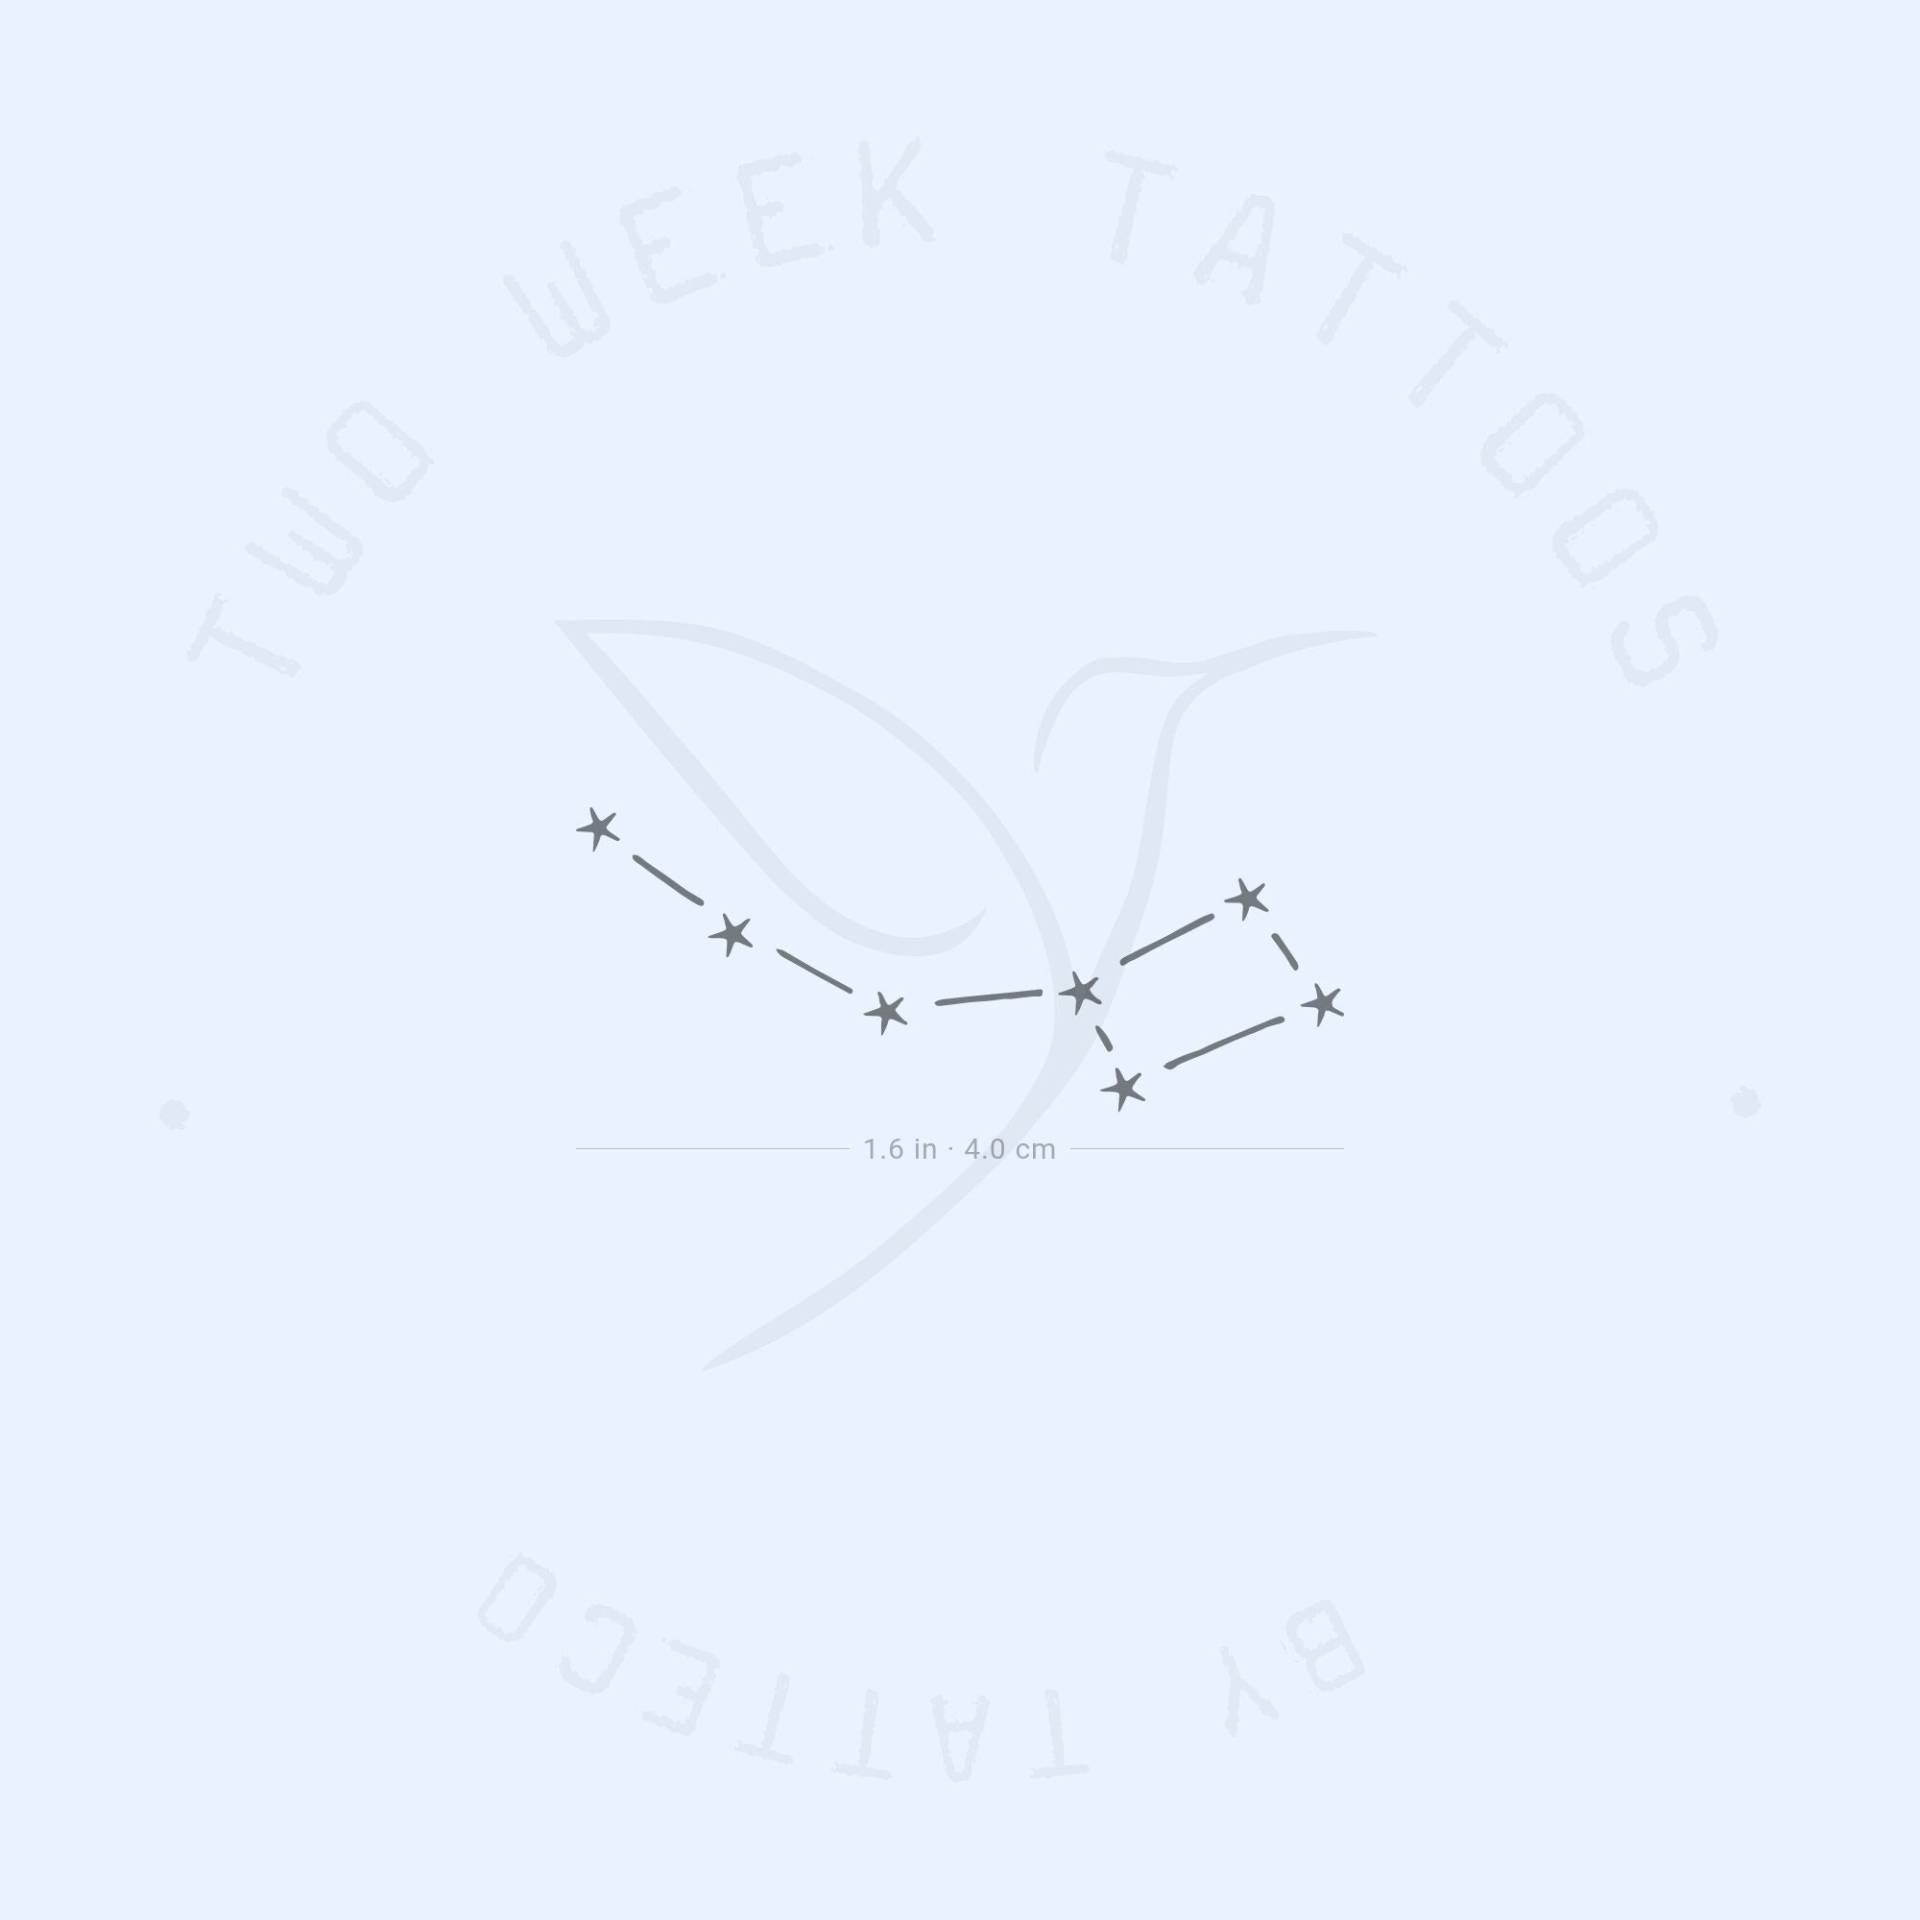 Kleiner Wasserlöffel Semi-Permanent Tattoo | 2Er Set von twoweektattoos